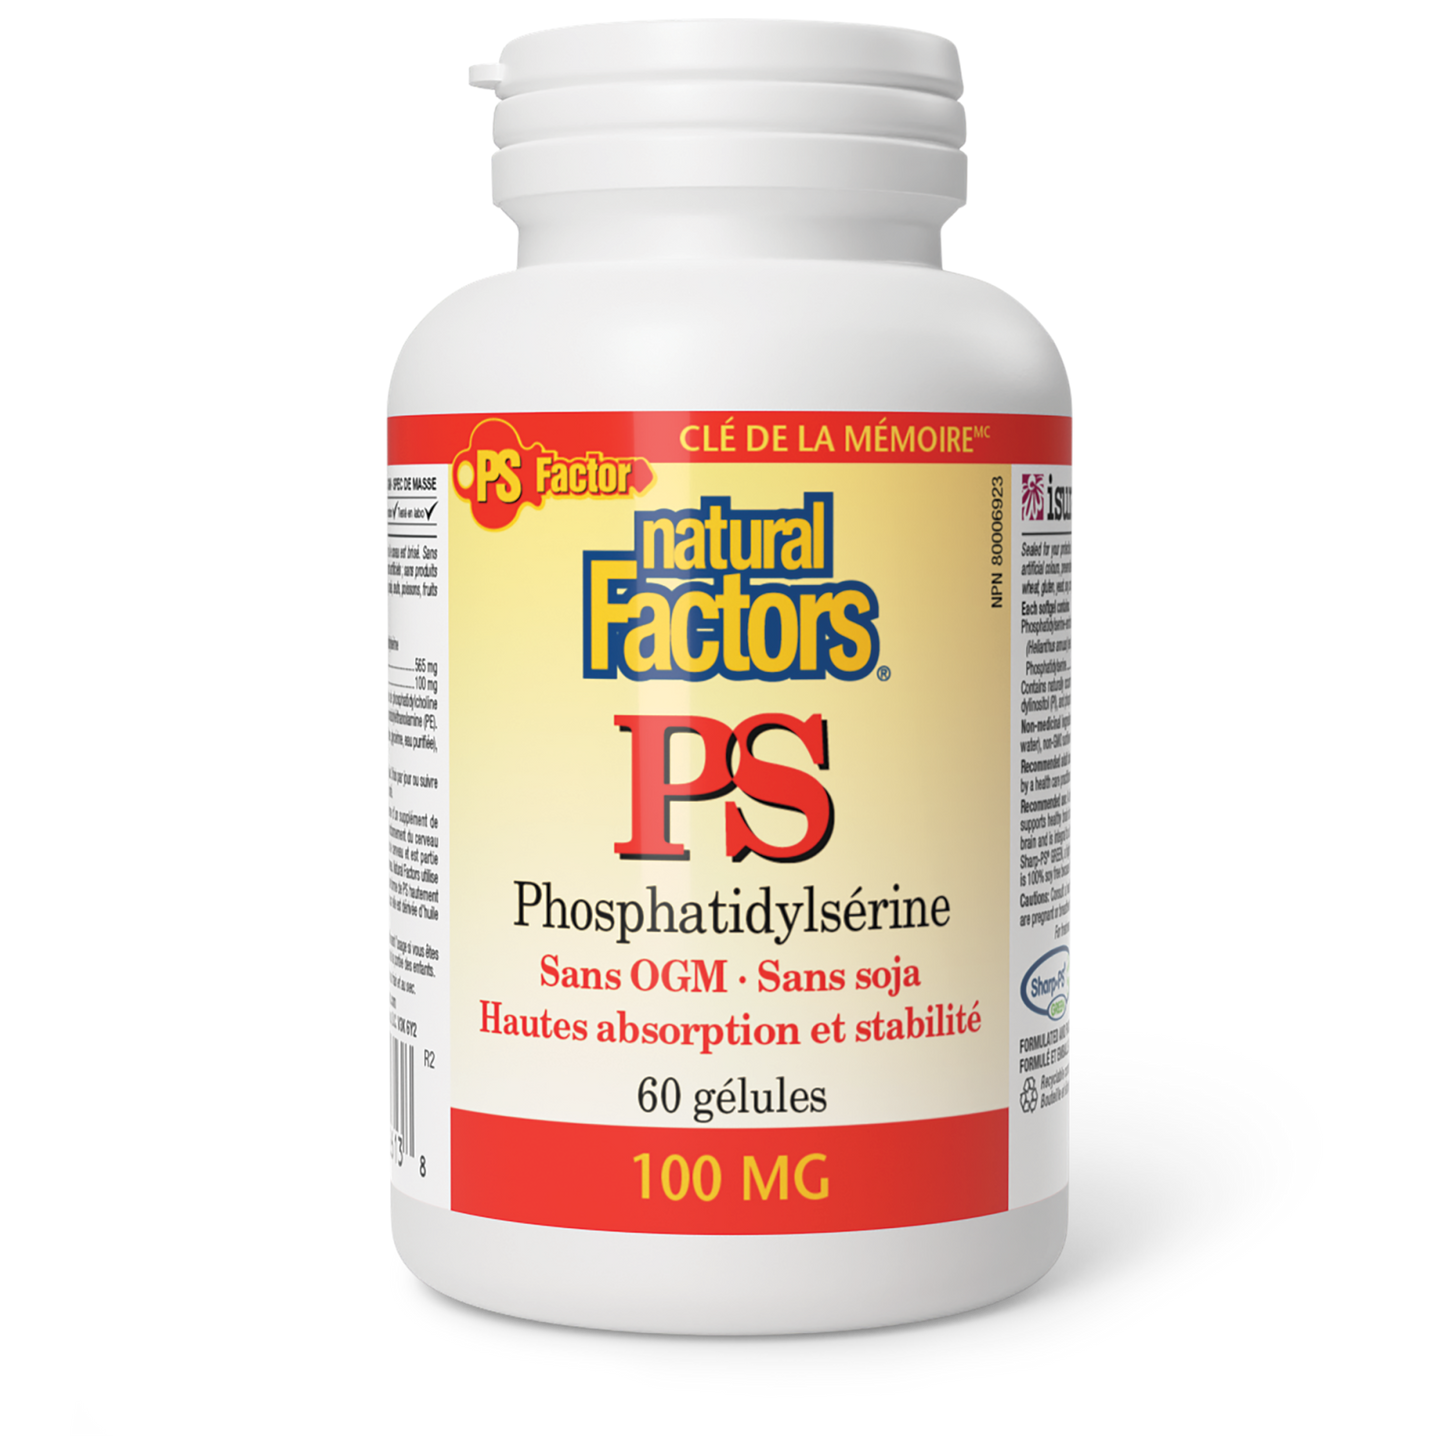 PS Phosphatidylsérine 100 mg, Natural Factors|v|image|2613